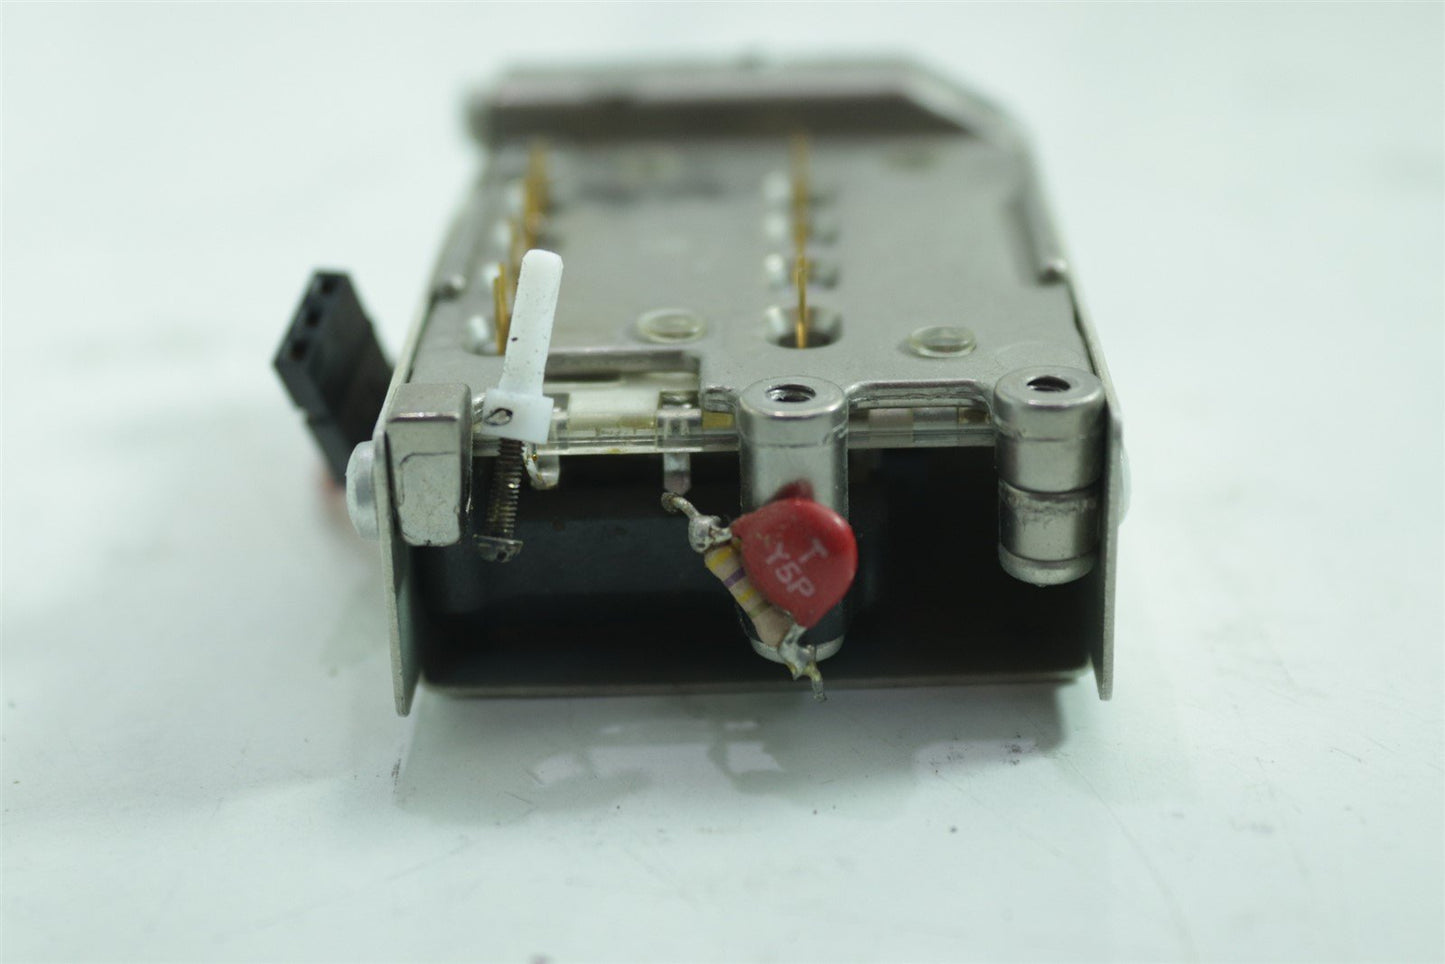 Tektronix Oscilloscope Digital Attenuator input amplifier 119-1445-04 300MHz BNC